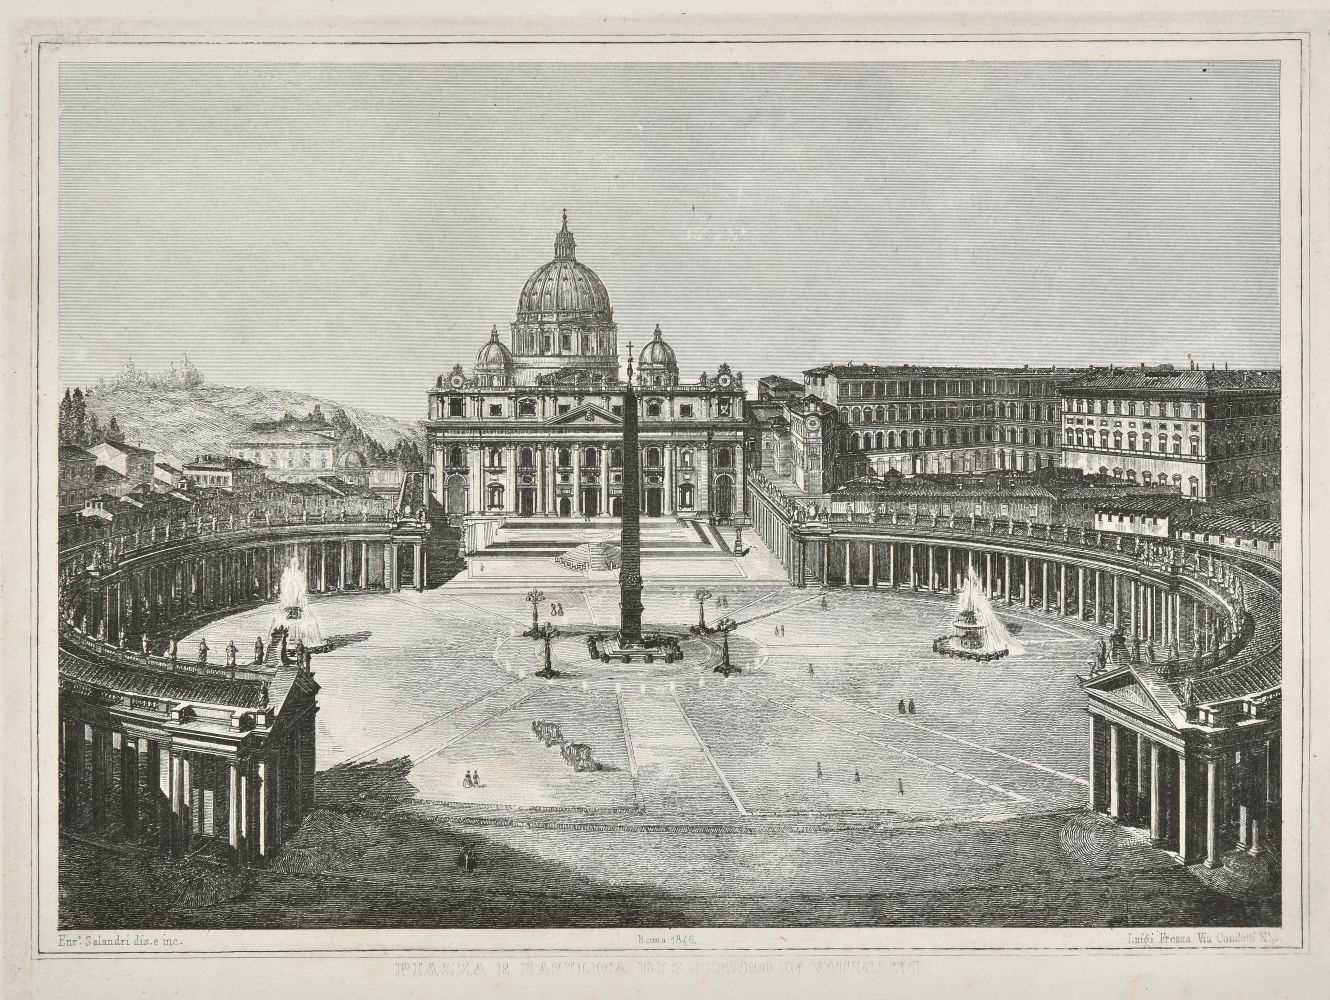 Lot 37 - Moschetti (Alessandro). Principali Monumenti di Roma, 1846